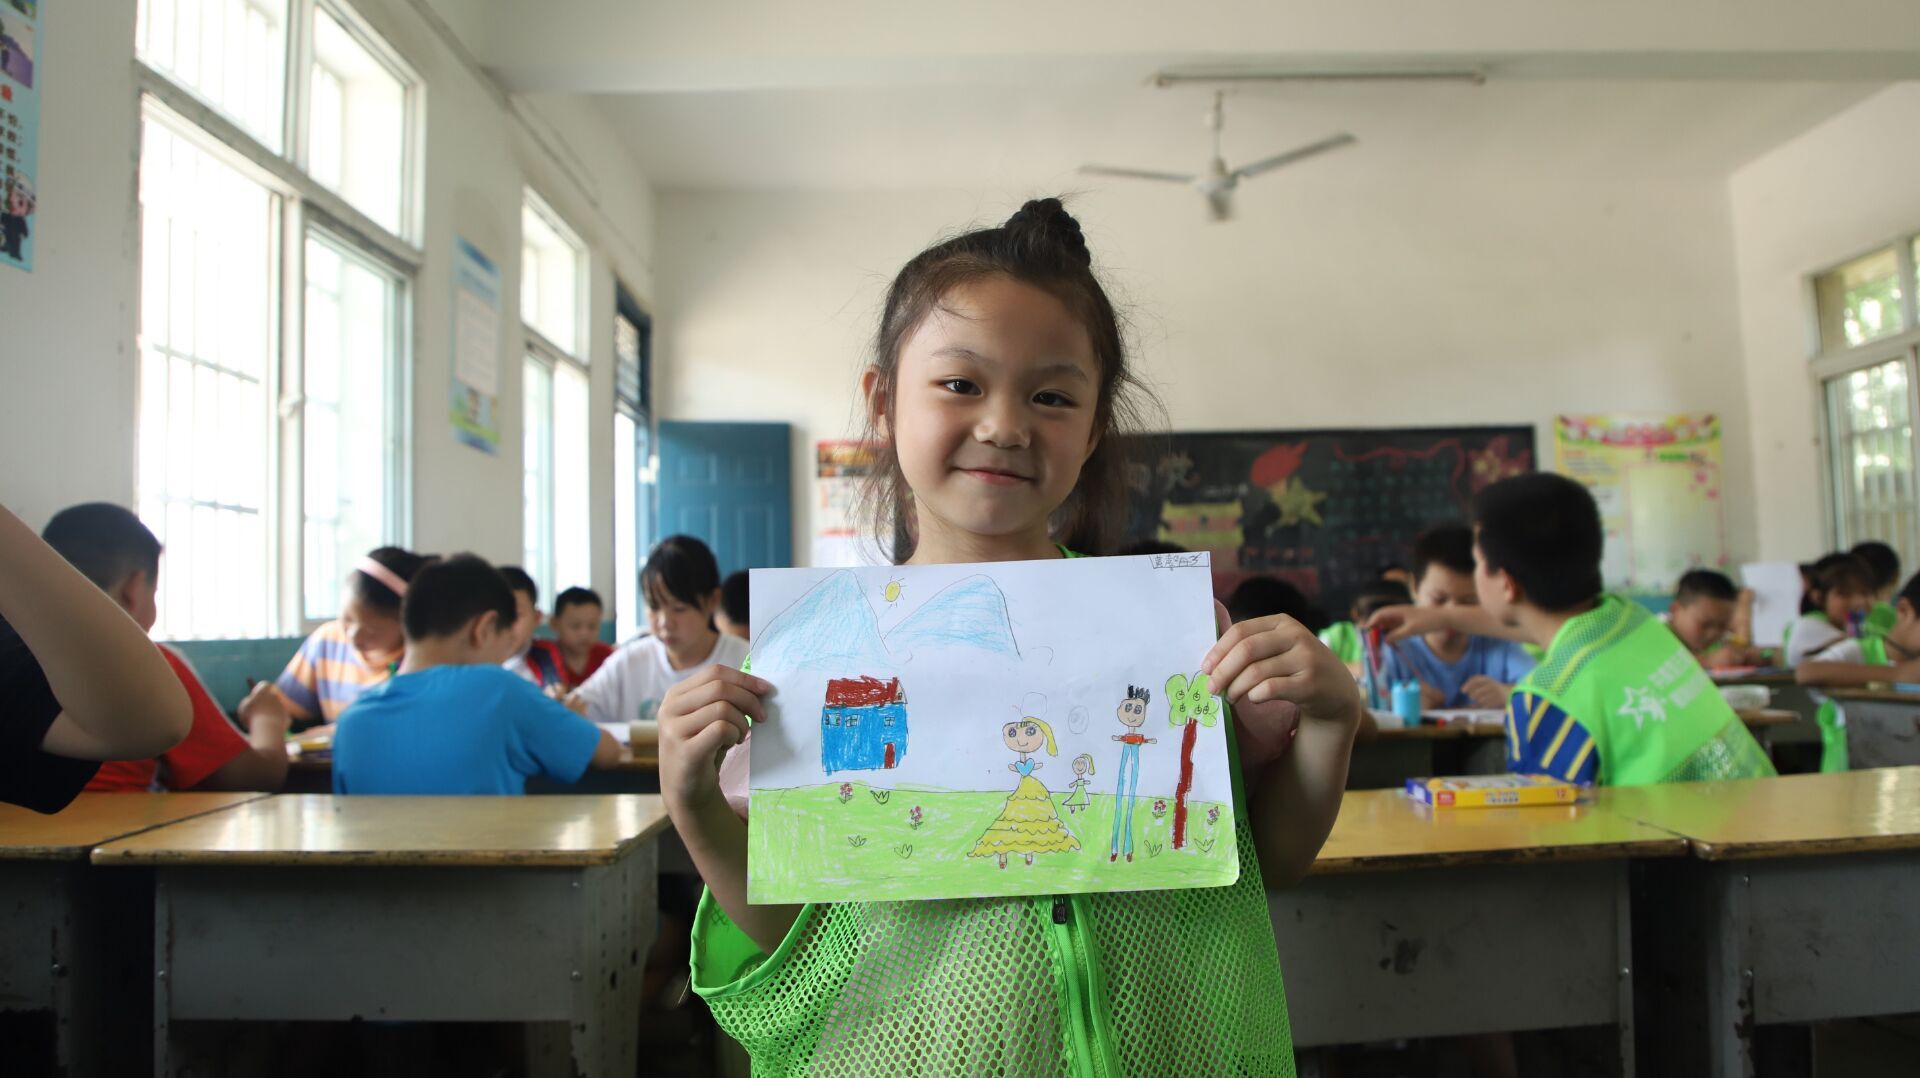 武汉高校大学生开展“我和我的家乡”特色美术课受孩子们热捧